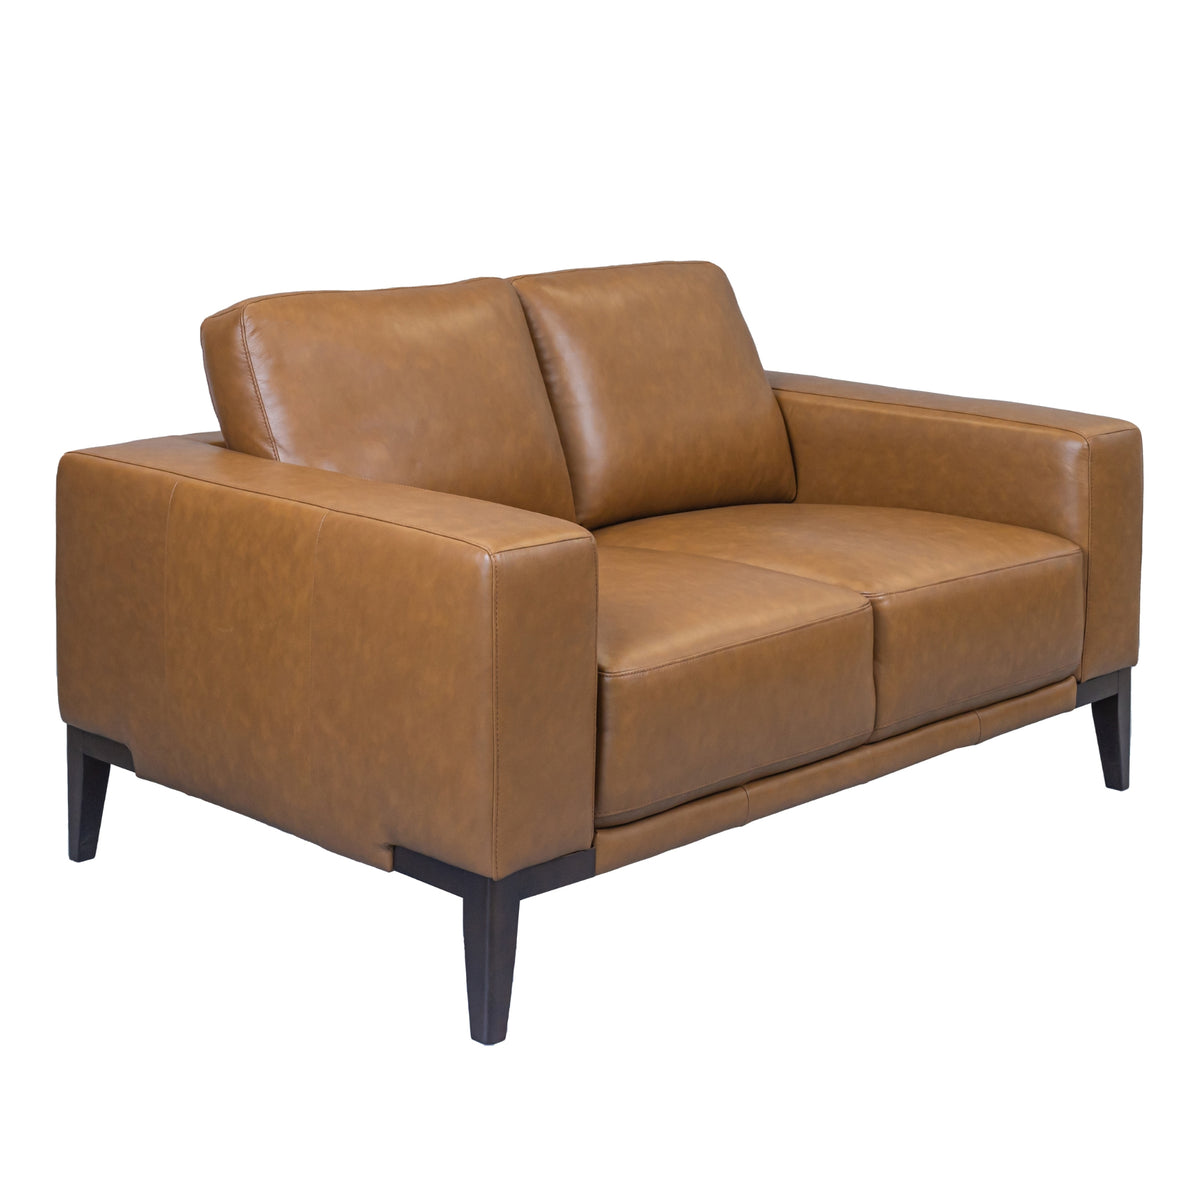 Lorenzo Leather Sofa 2 Seater Tan